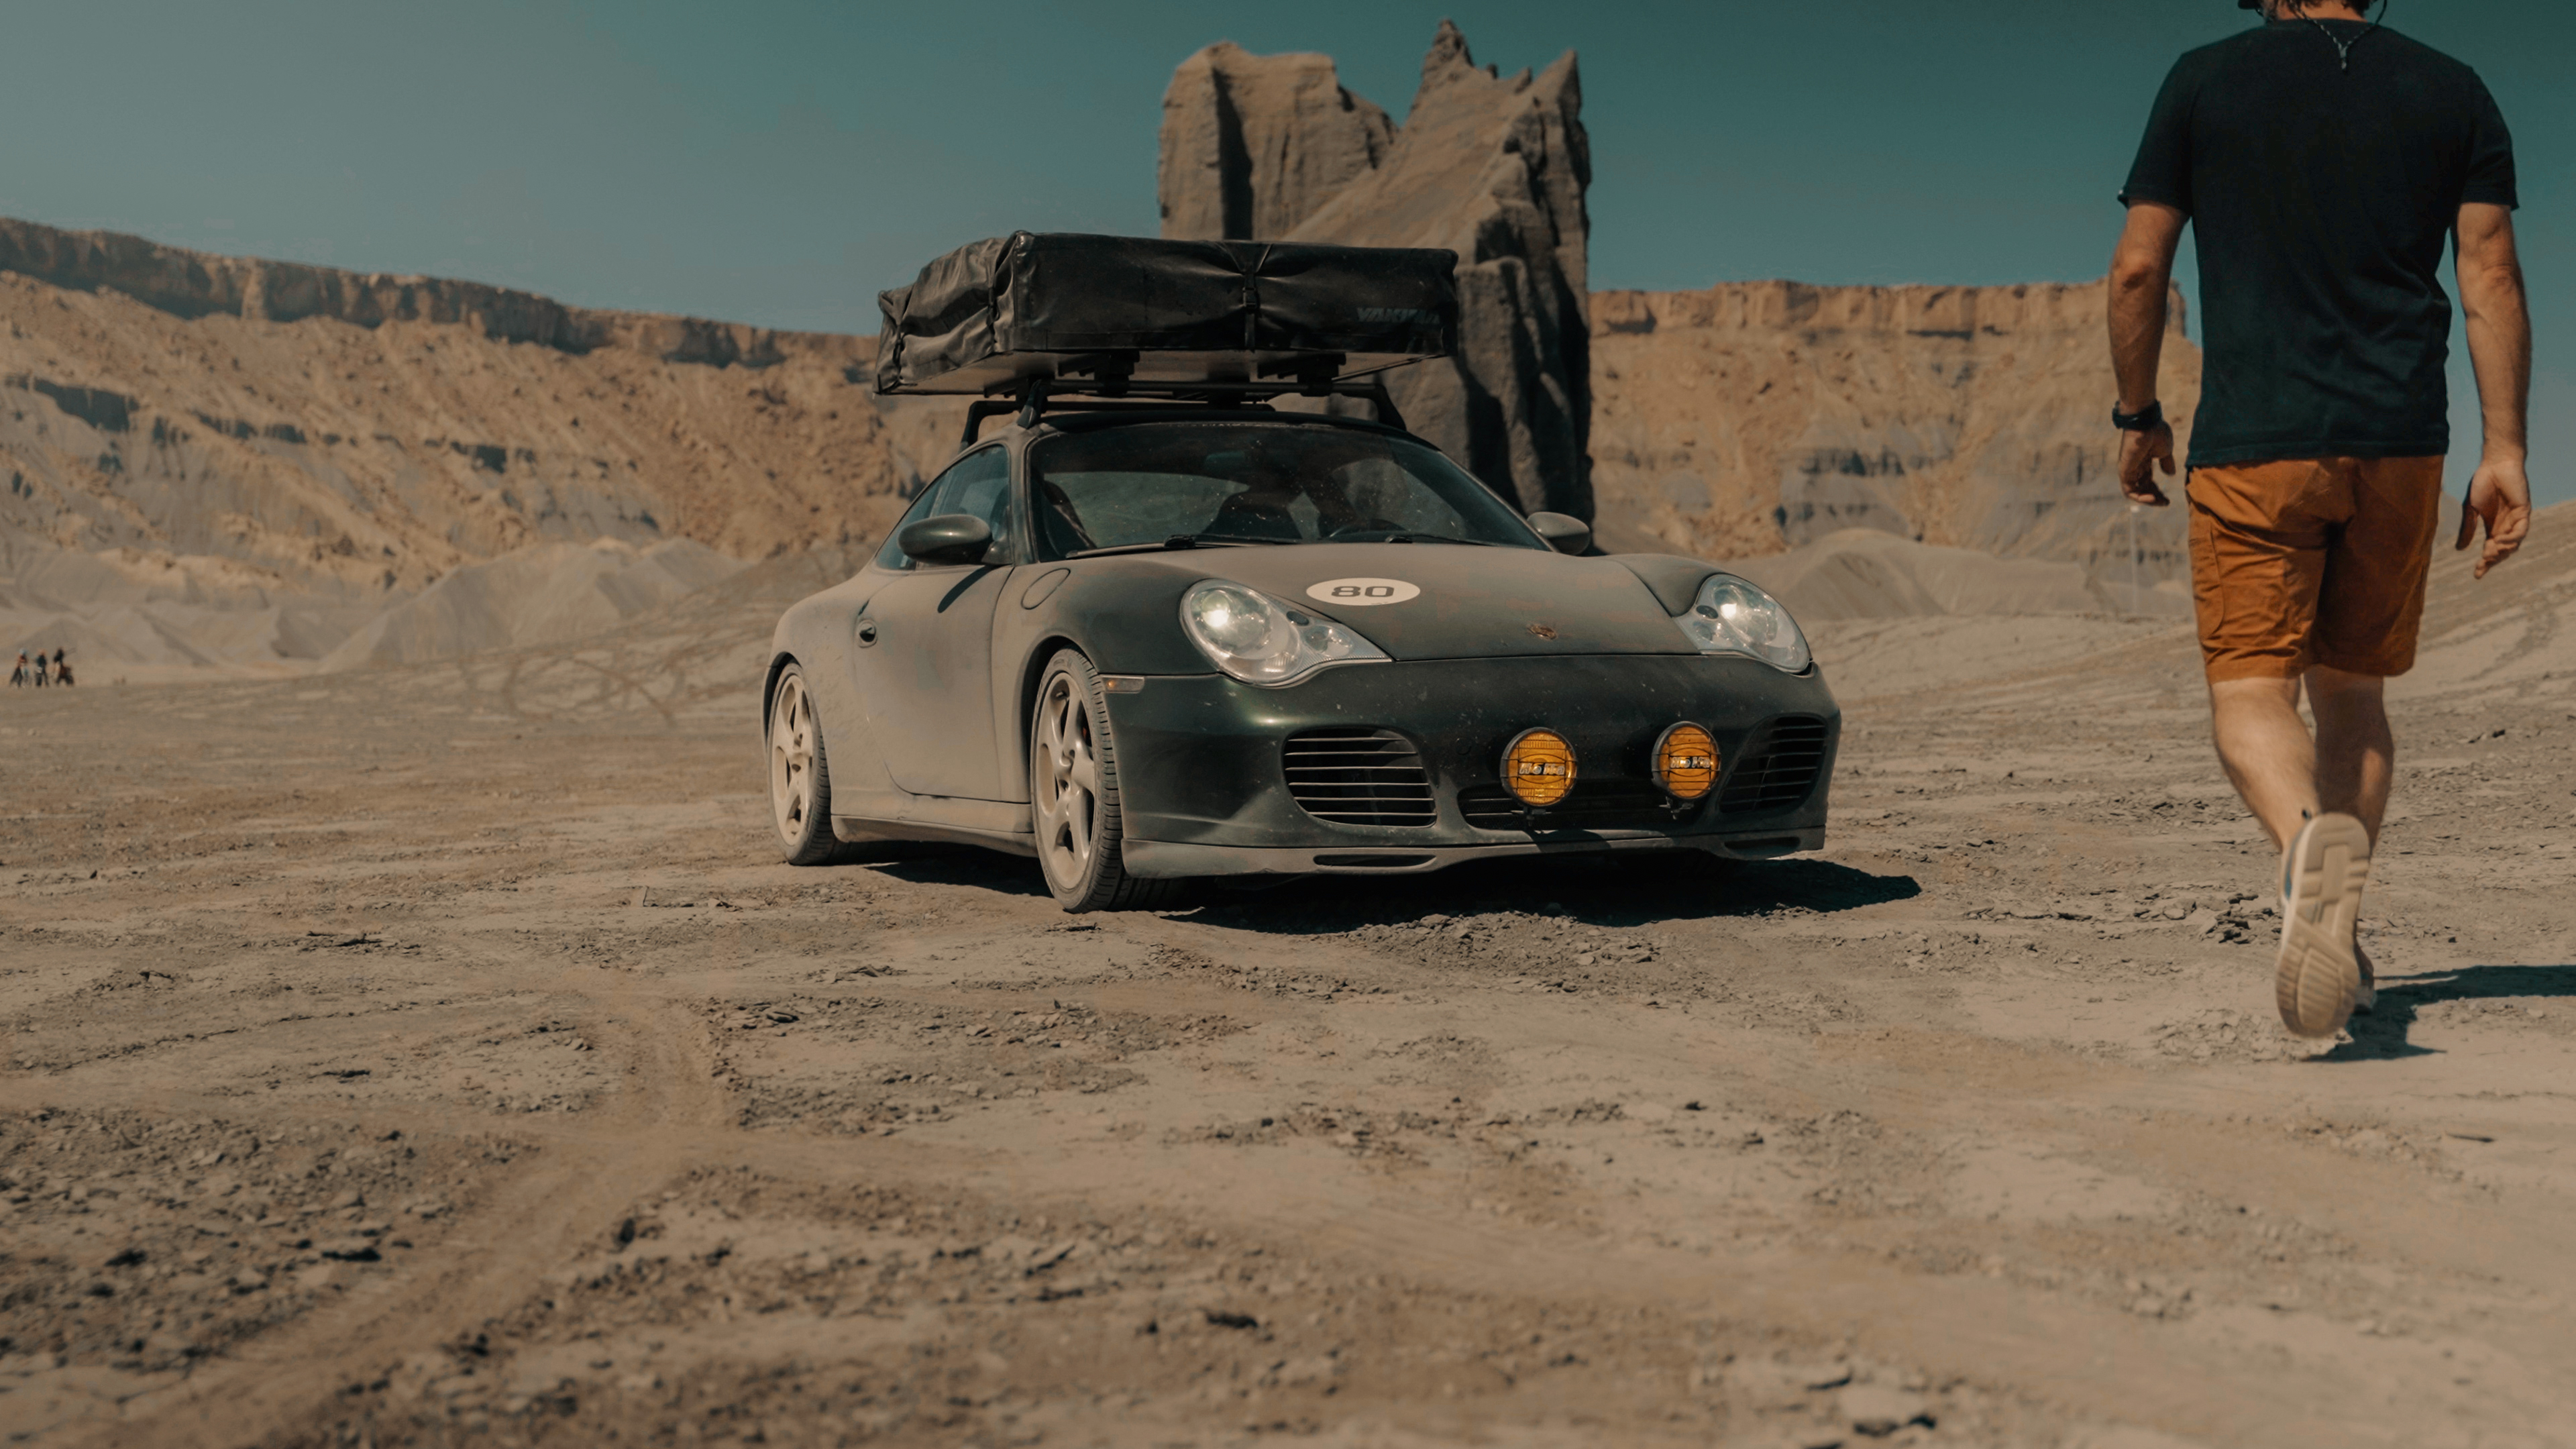 Man walks towards a sandy Porsche in rocky desert